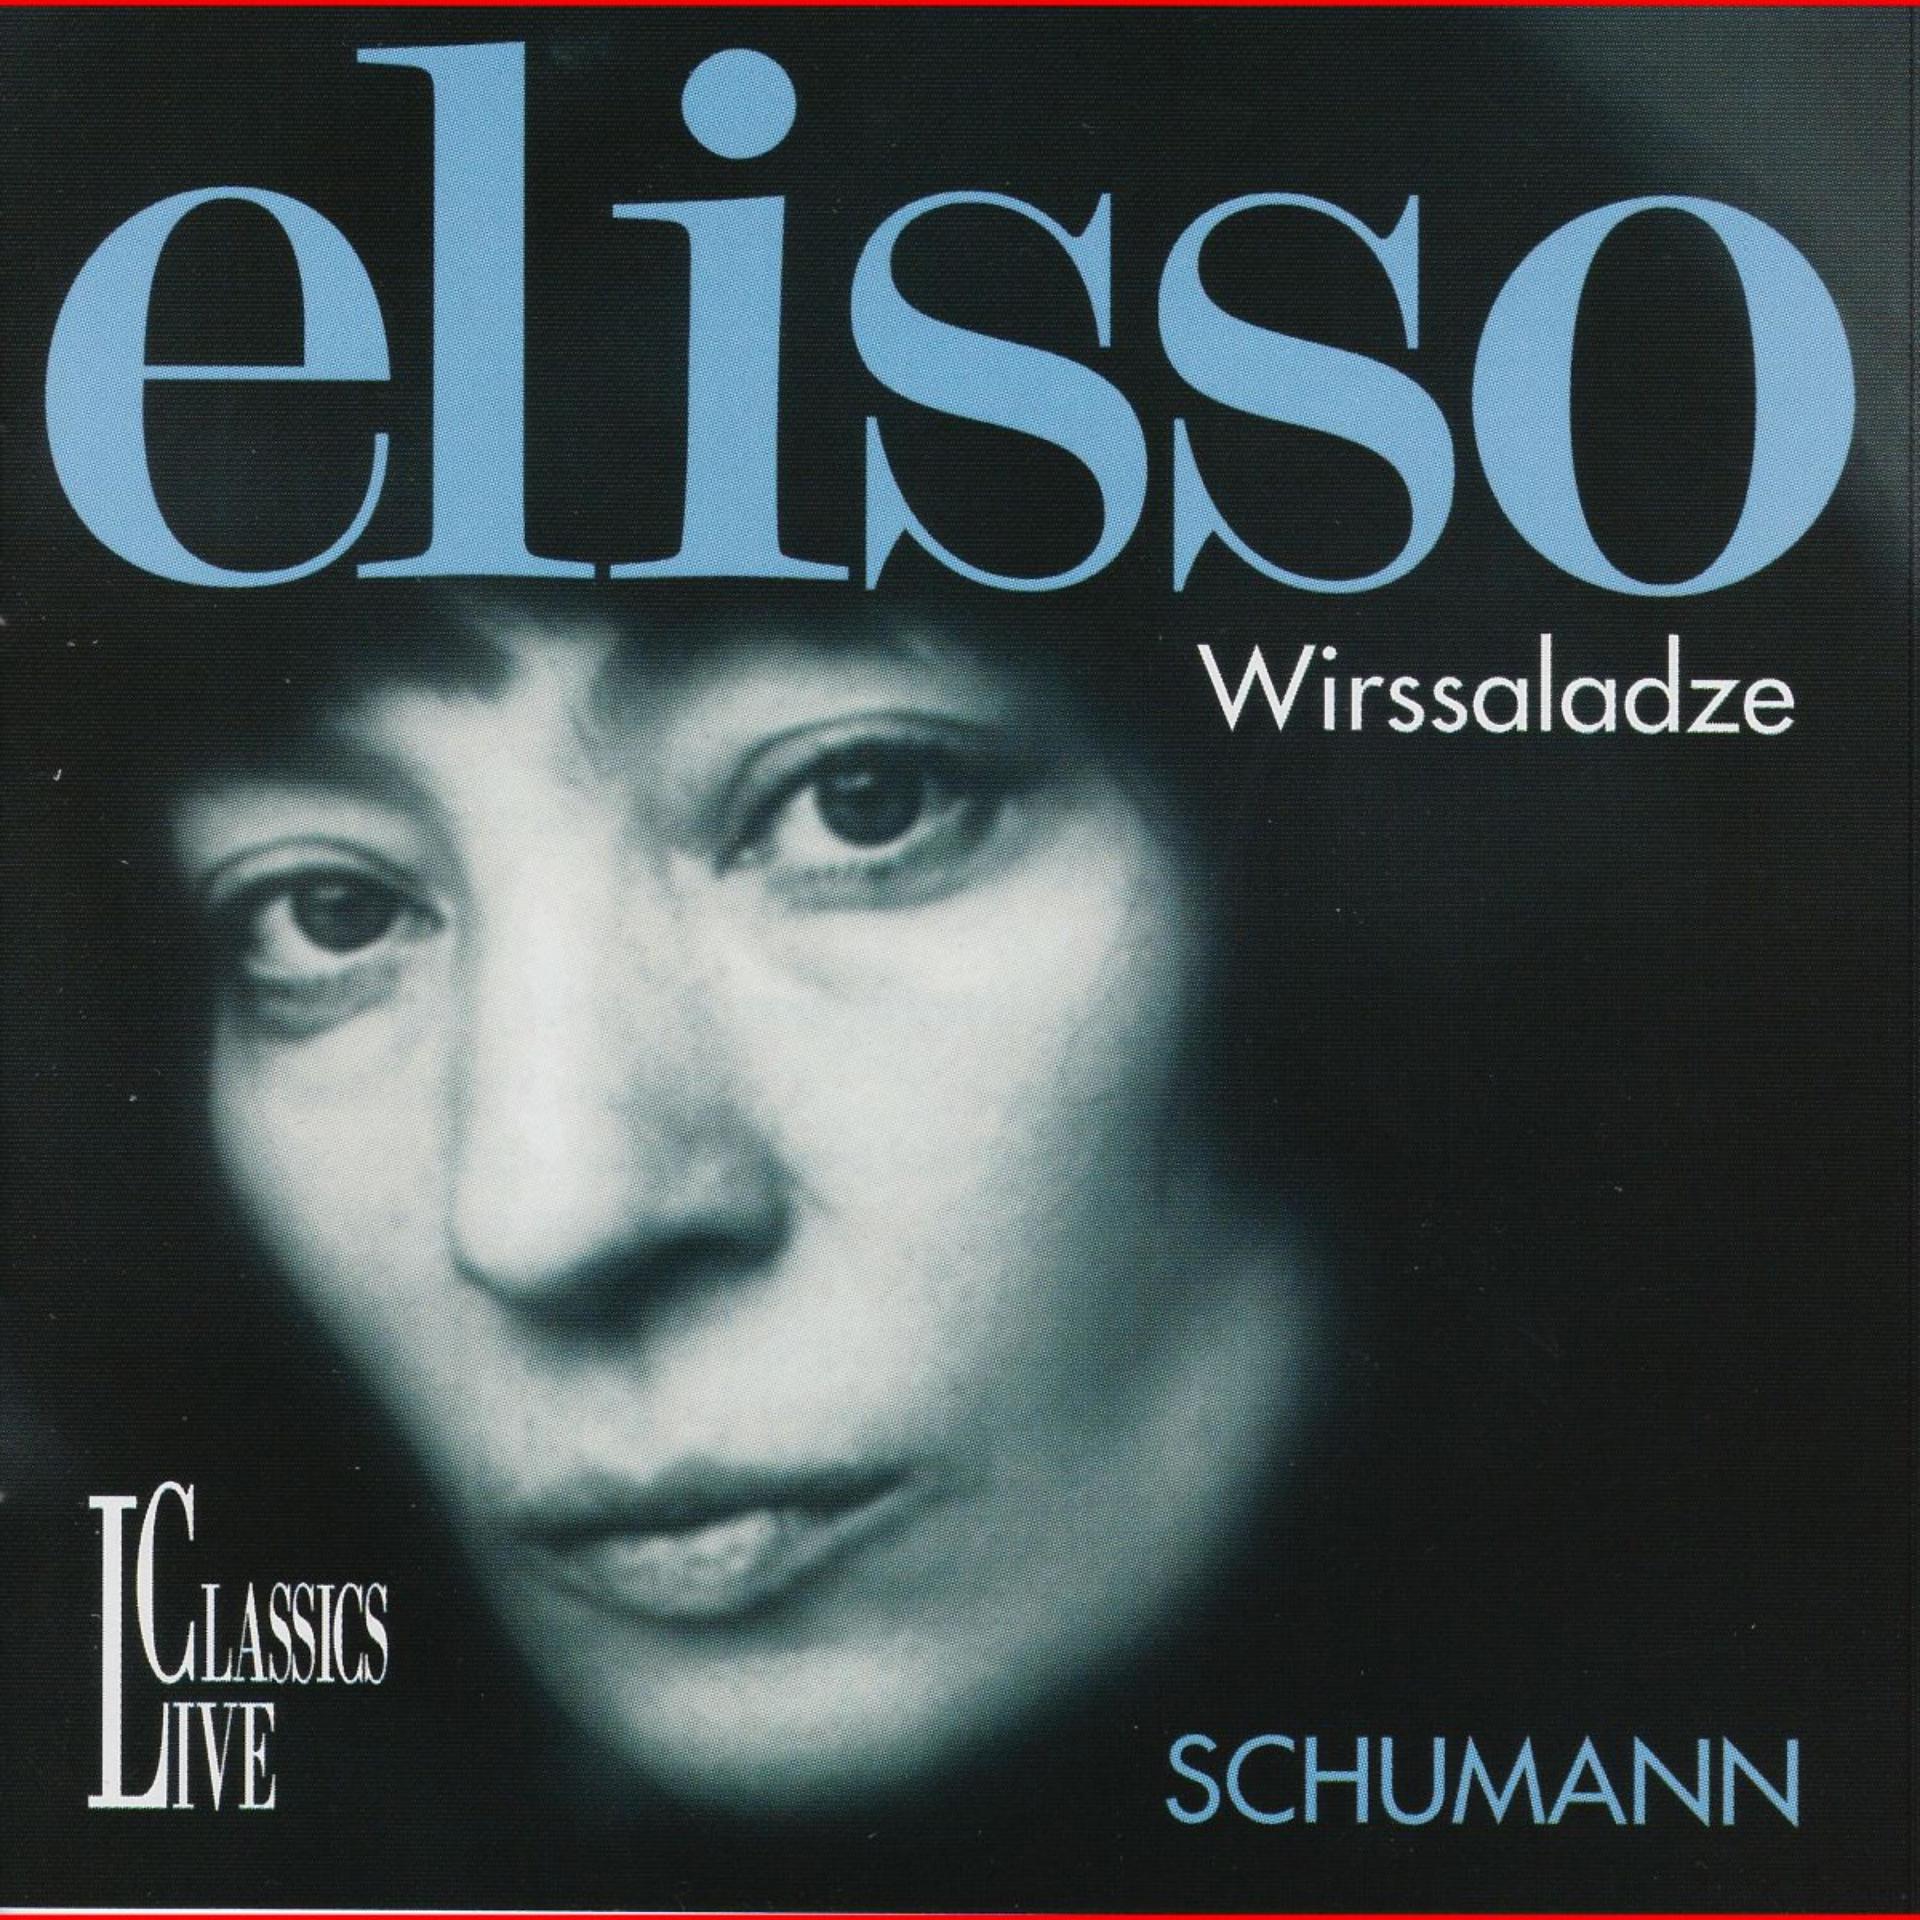 Постер альбома Schumann: Elisso Wirssaladze